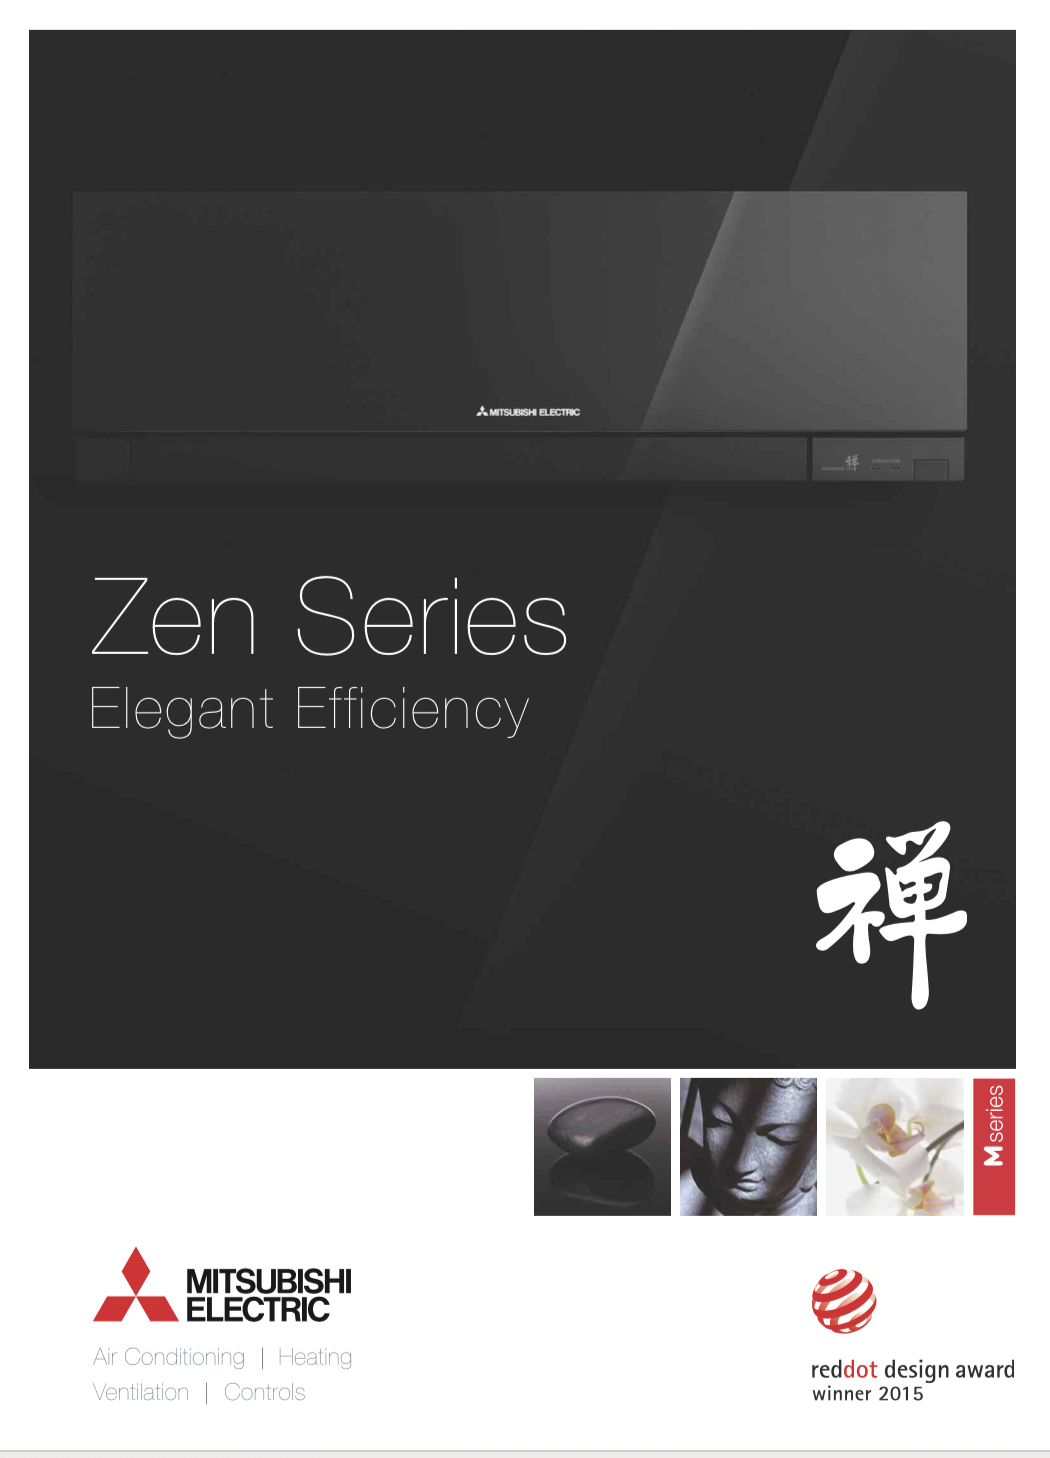 Zen series